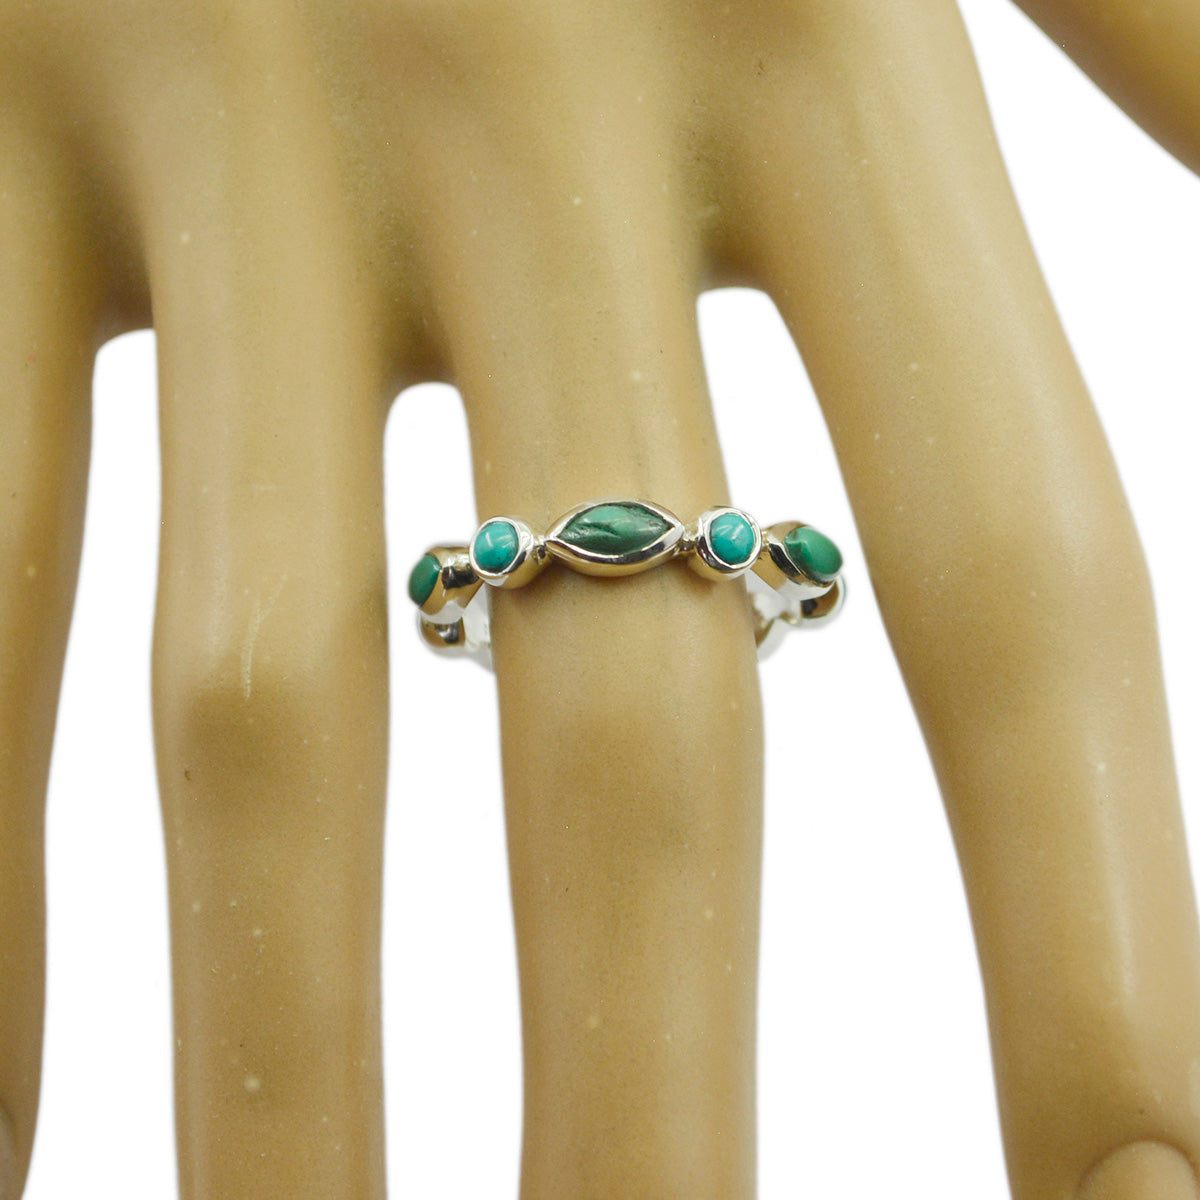 Классические серебряные кольца с драгоценными камнями и бирюзой популярных ювелирных брендов